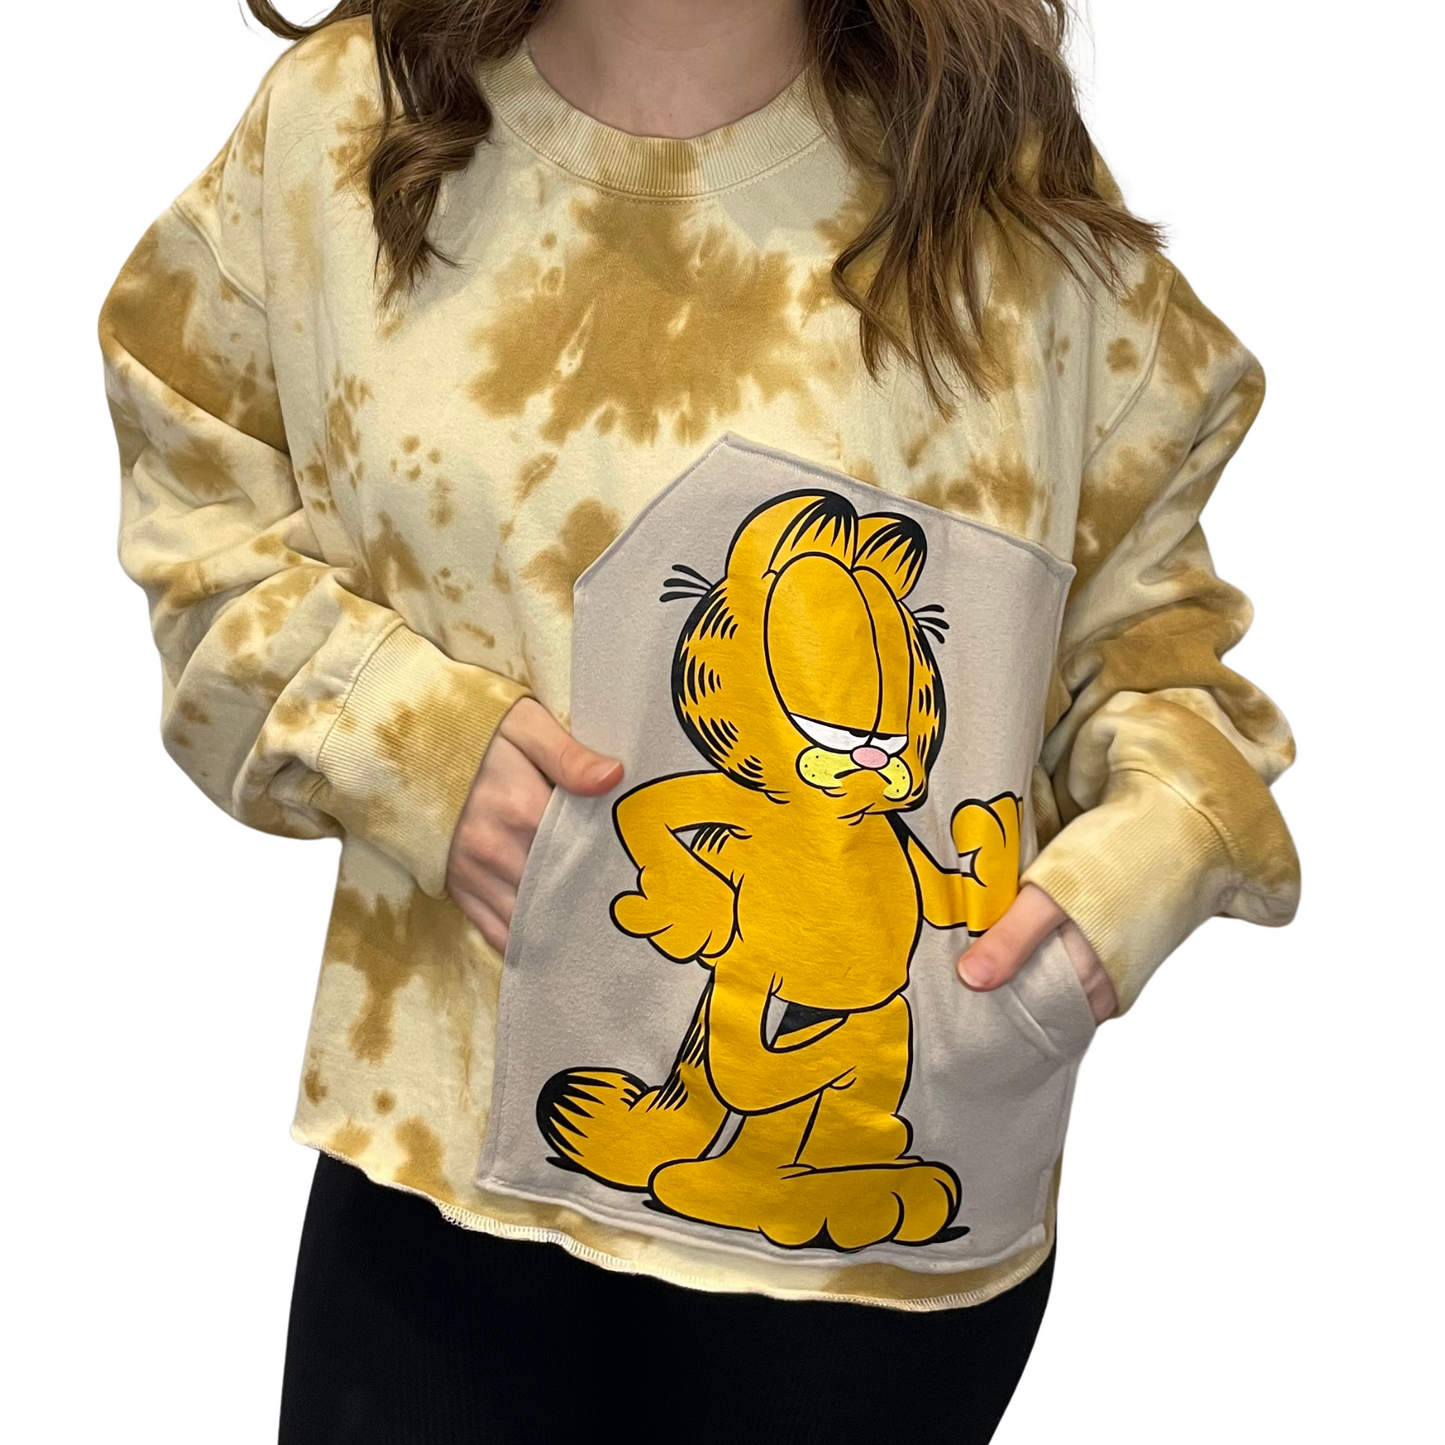 Garfield Crew